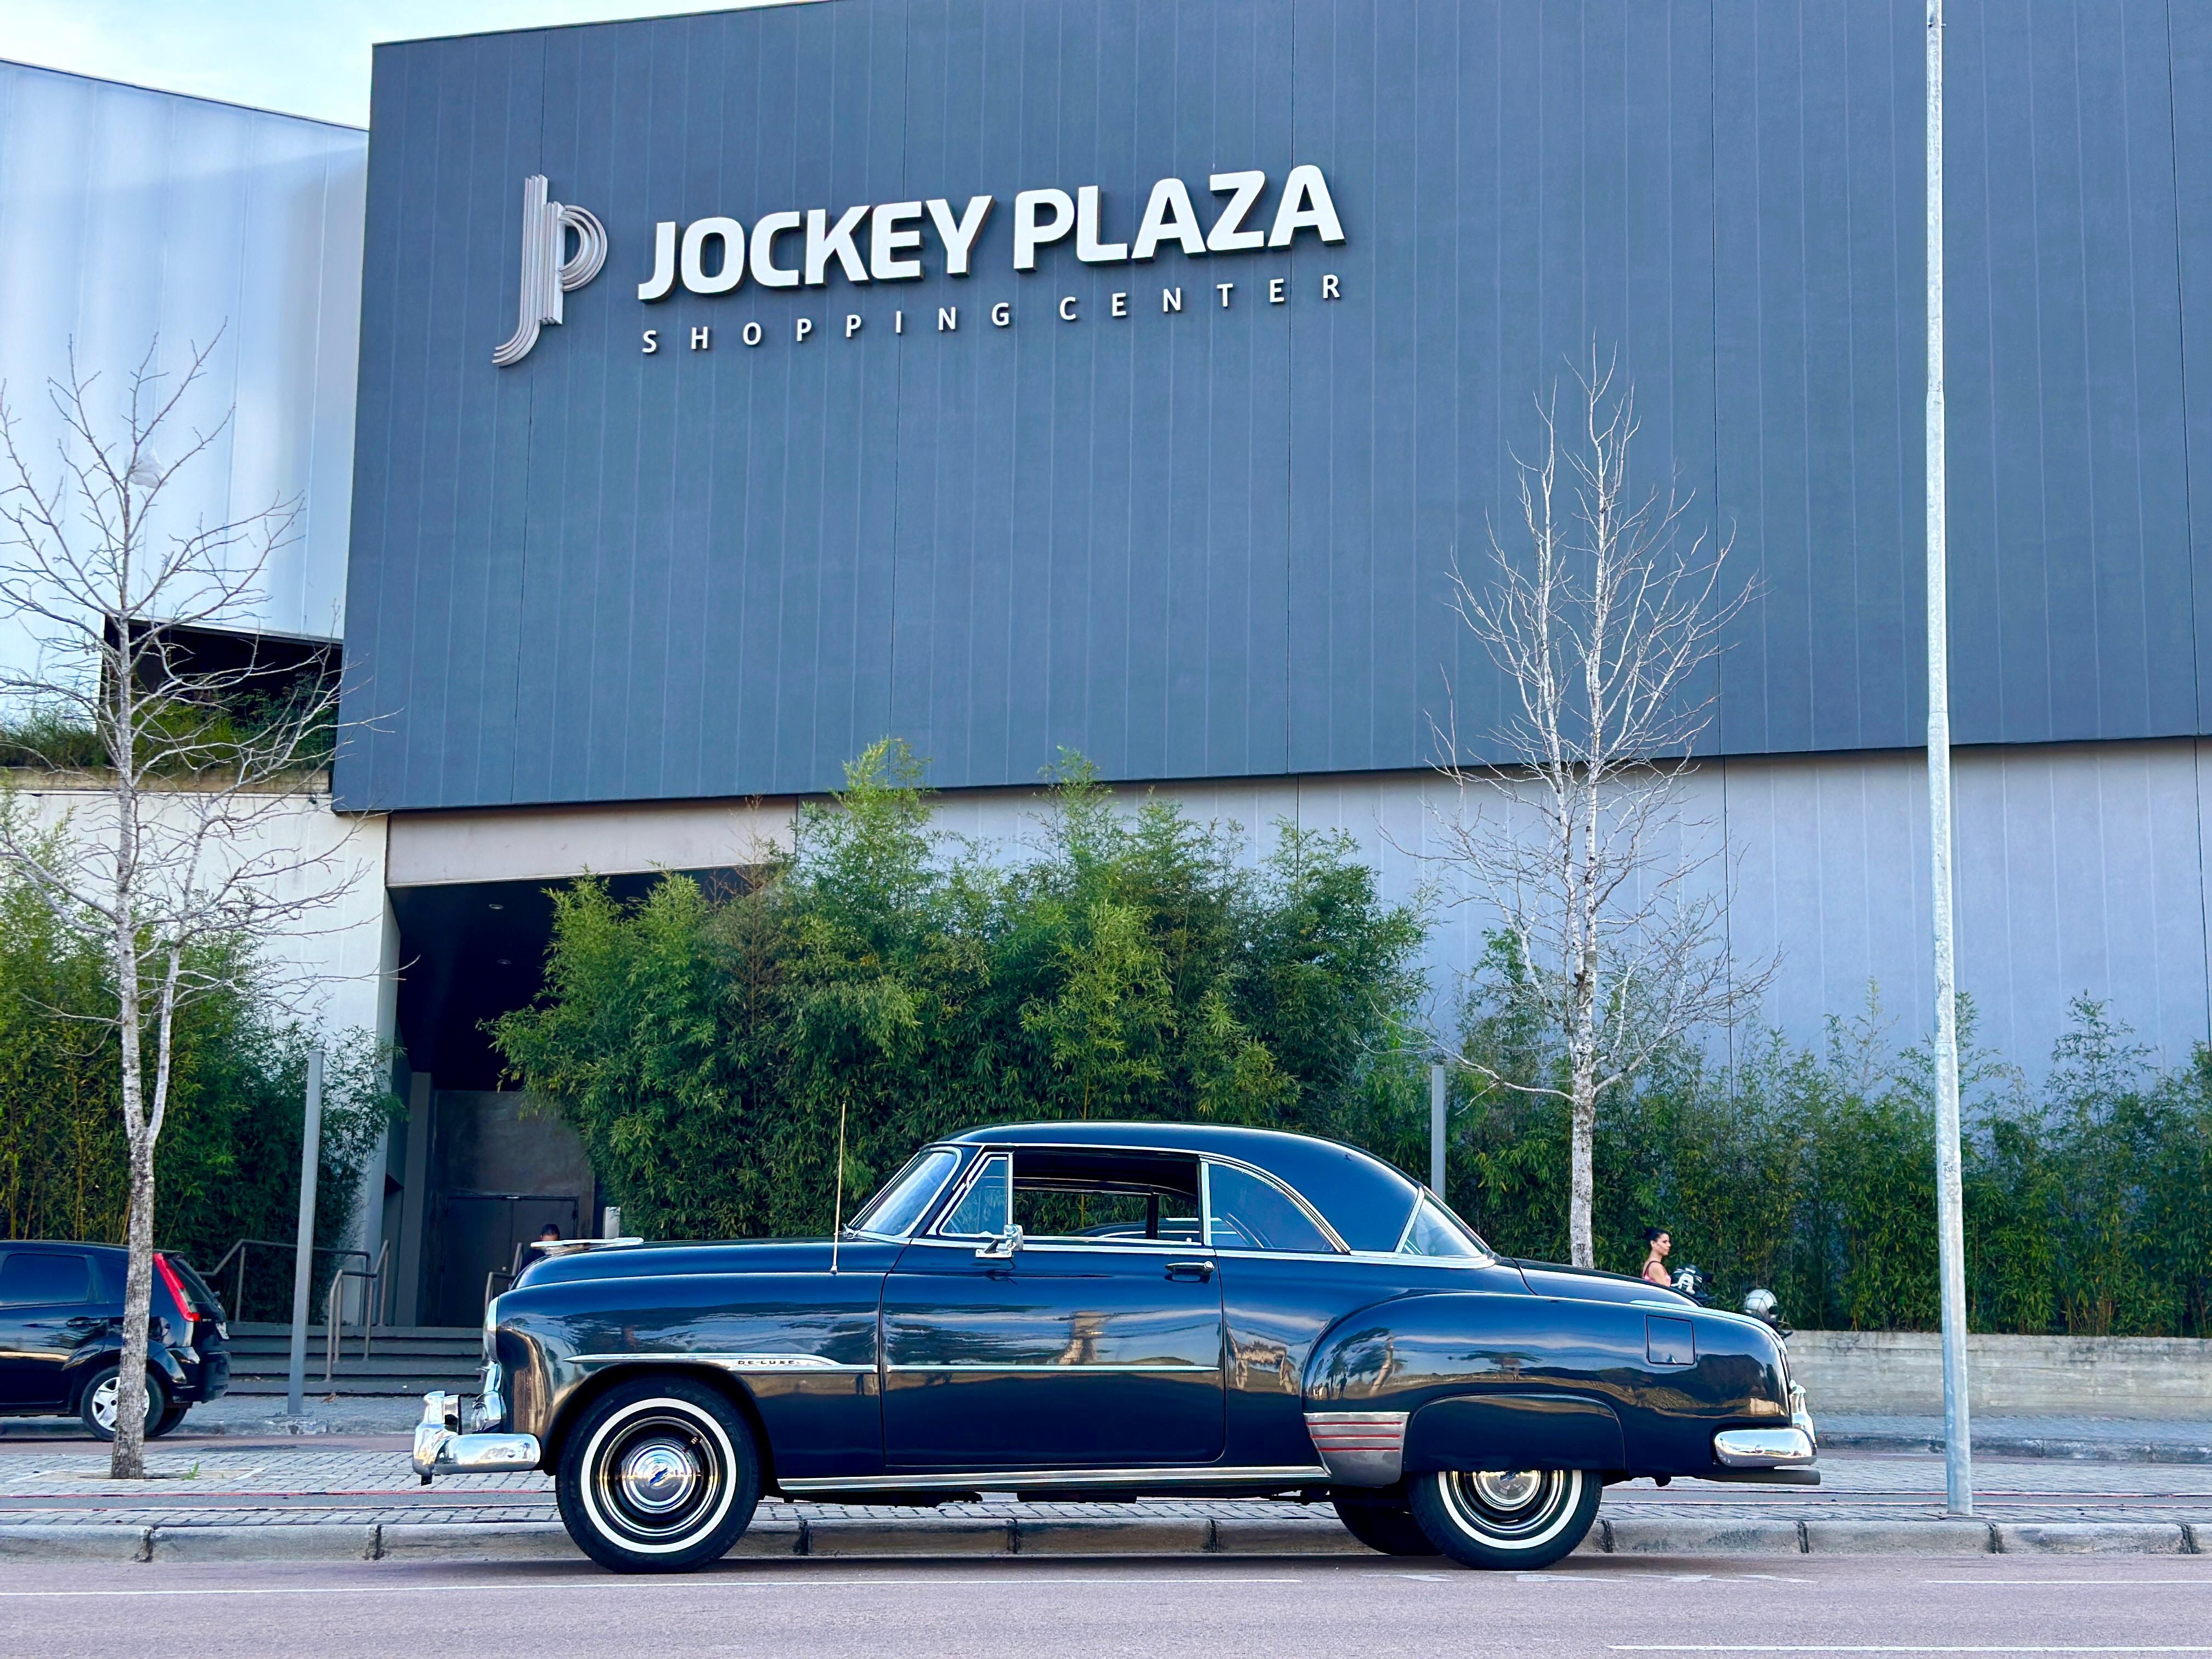 Jockey Plaza Shopping realiza exposição de carros antigos nesta sexta-feira (26)